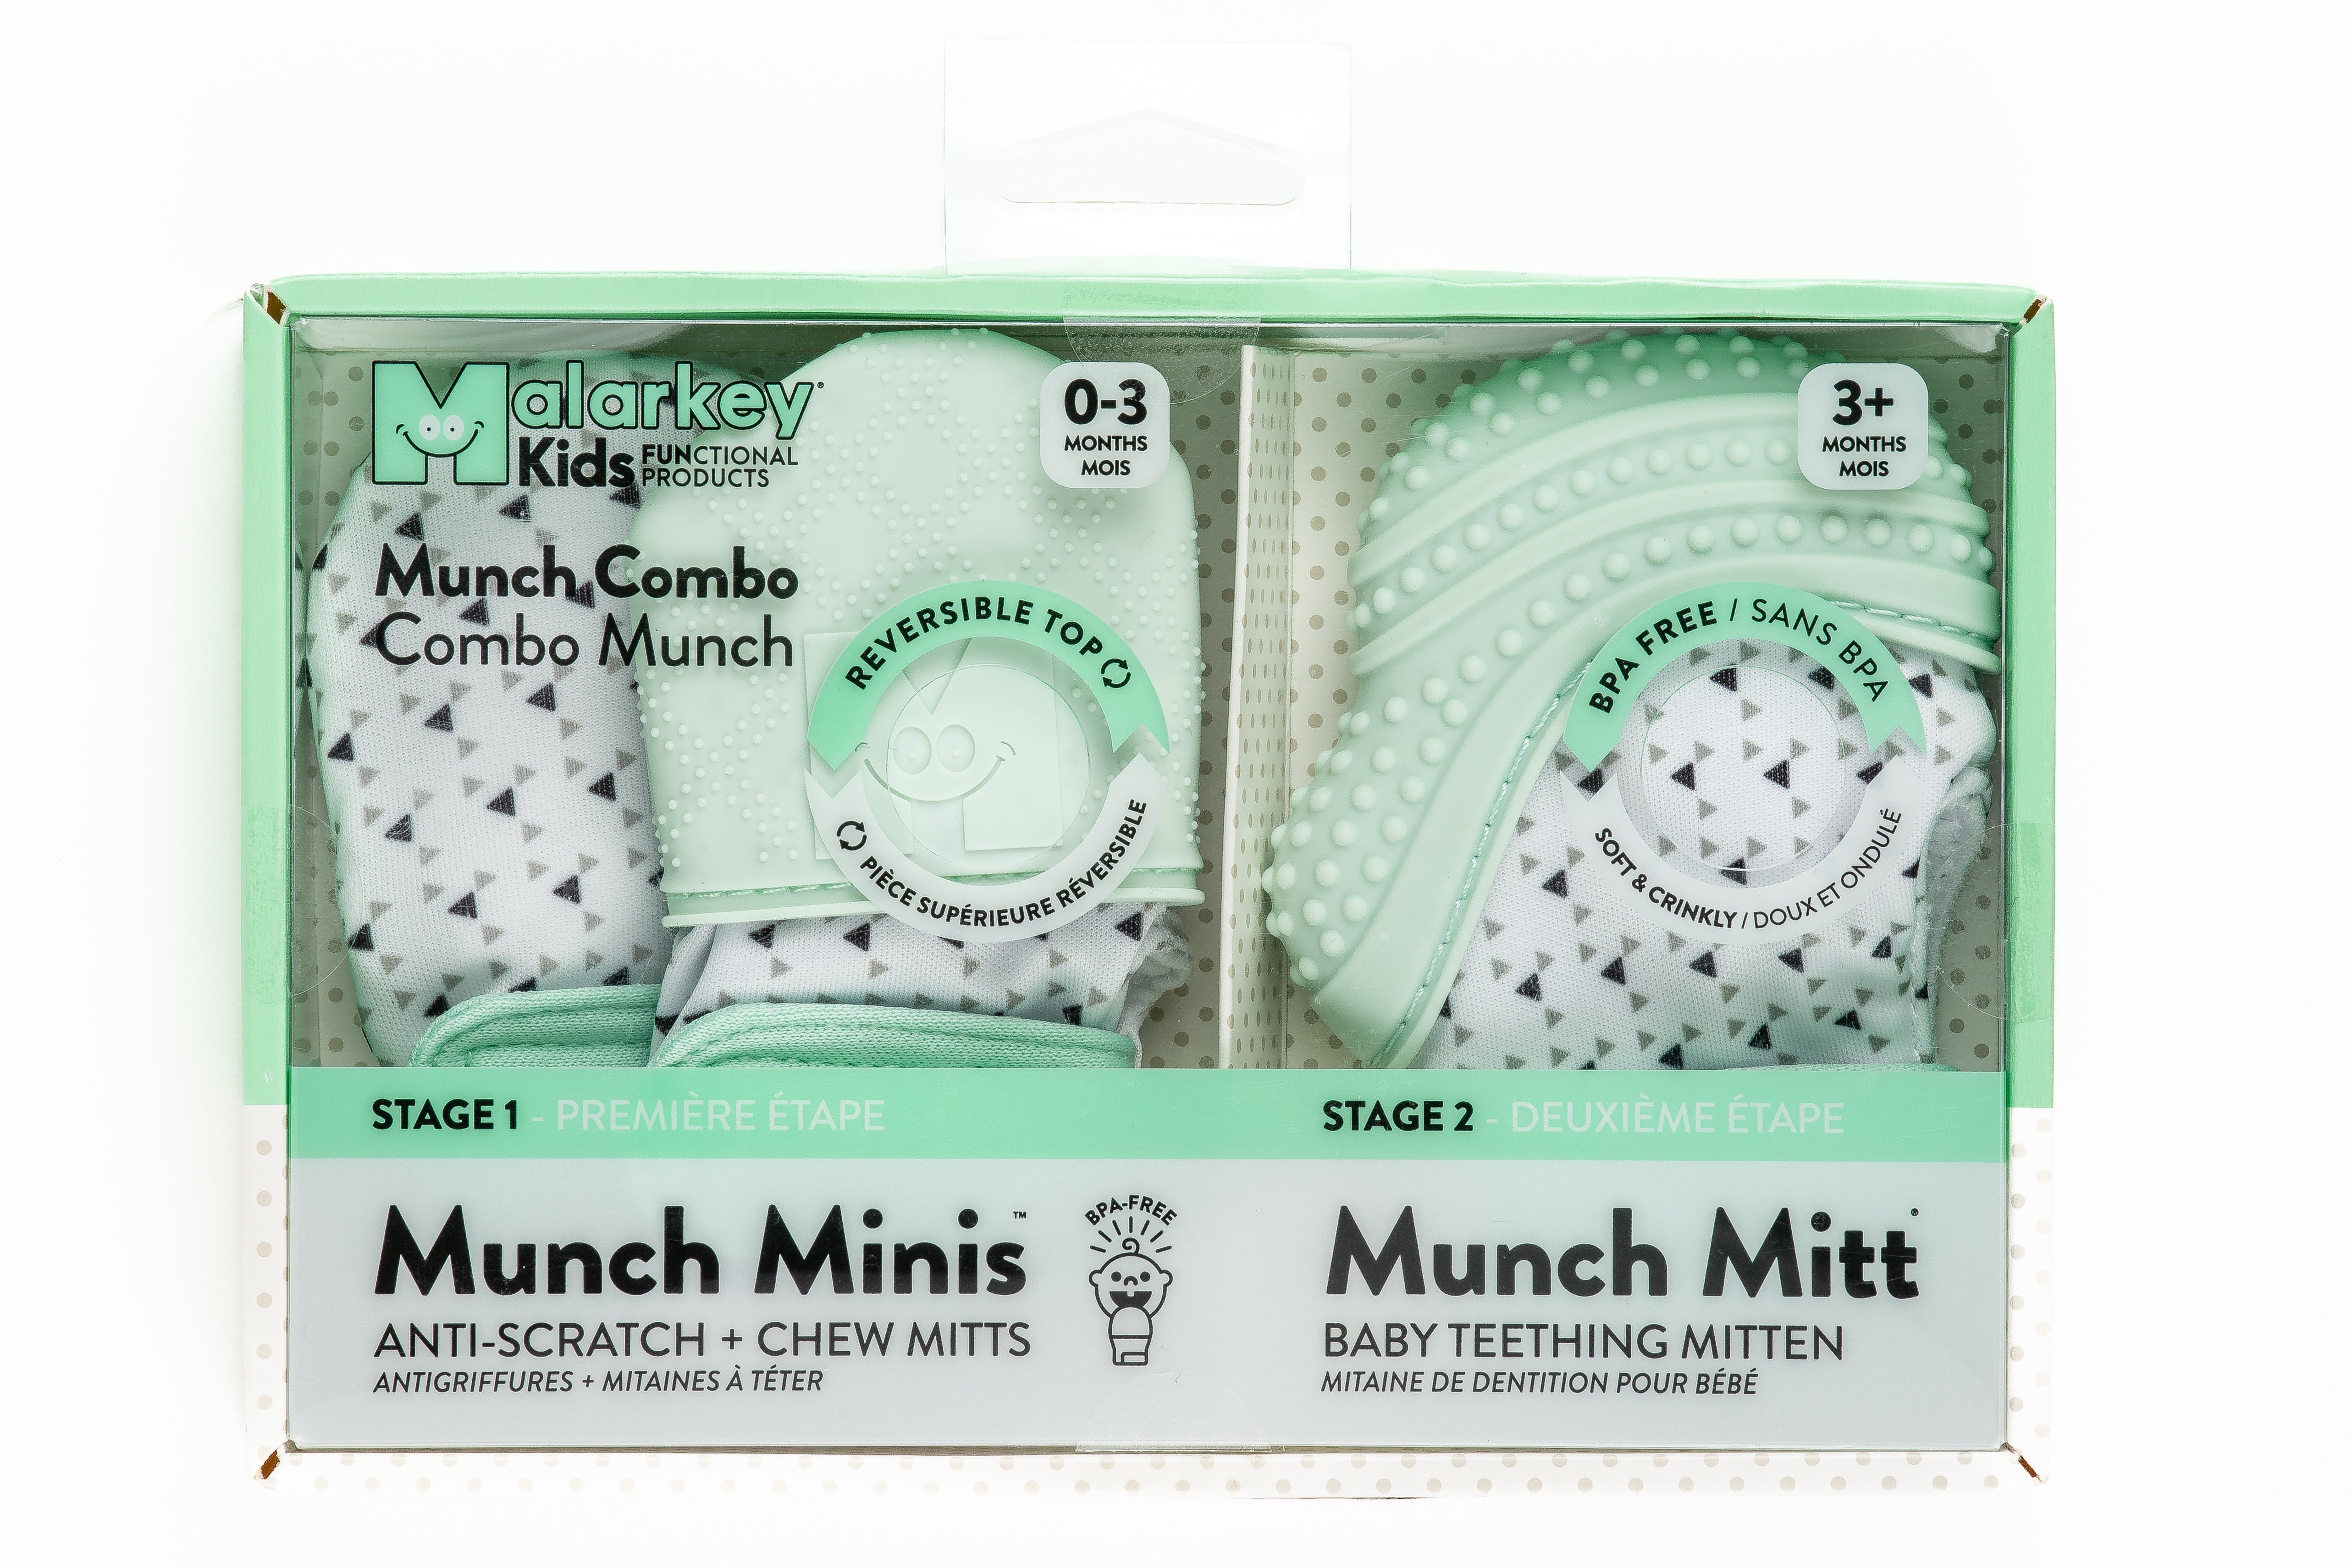 Munch Mitt® Mitaine De Dentition Pour Bebe 